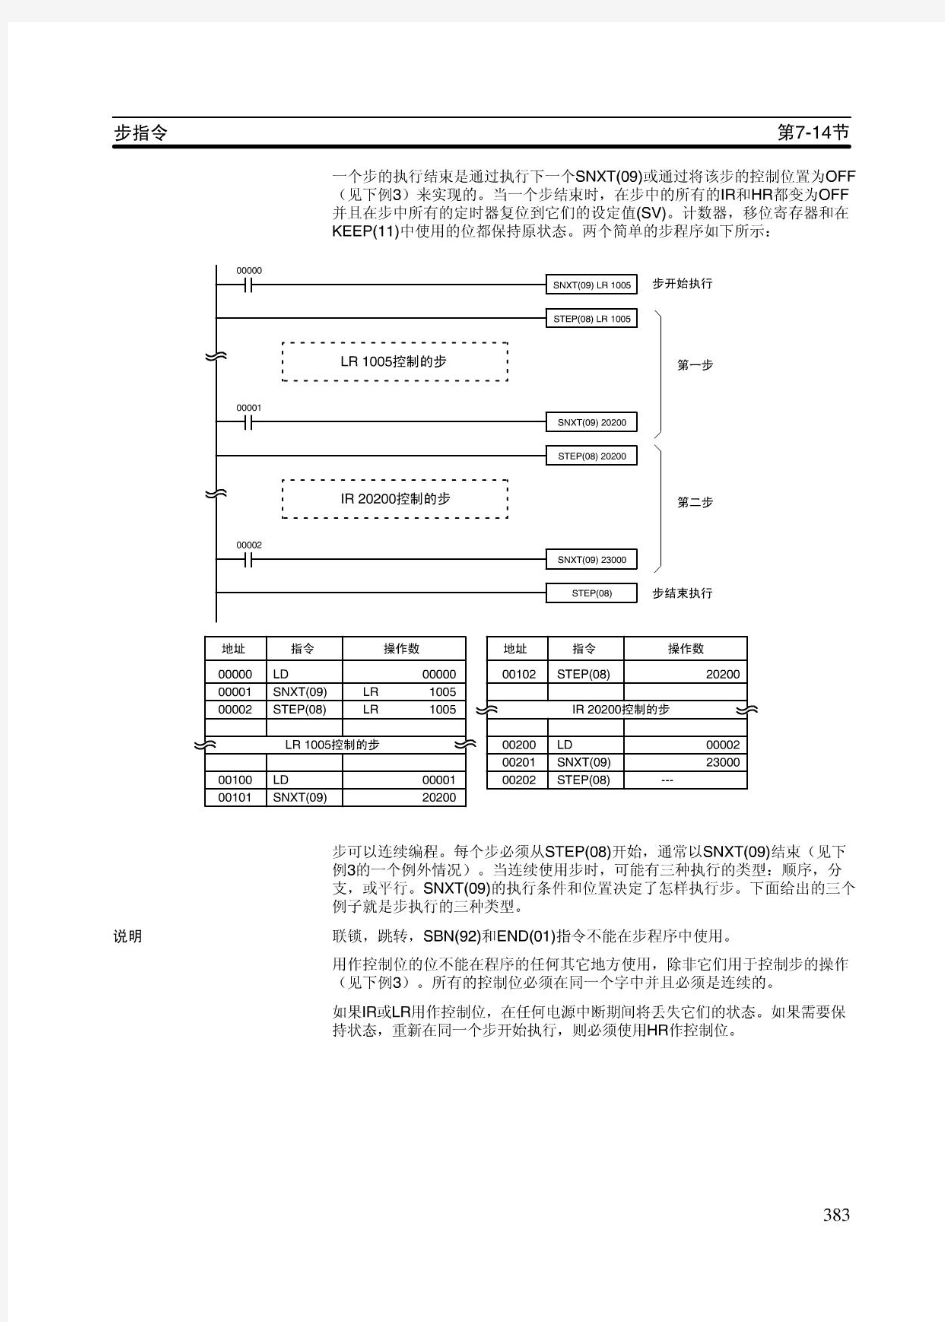 欧姆龙PLC编程手册(中文)05